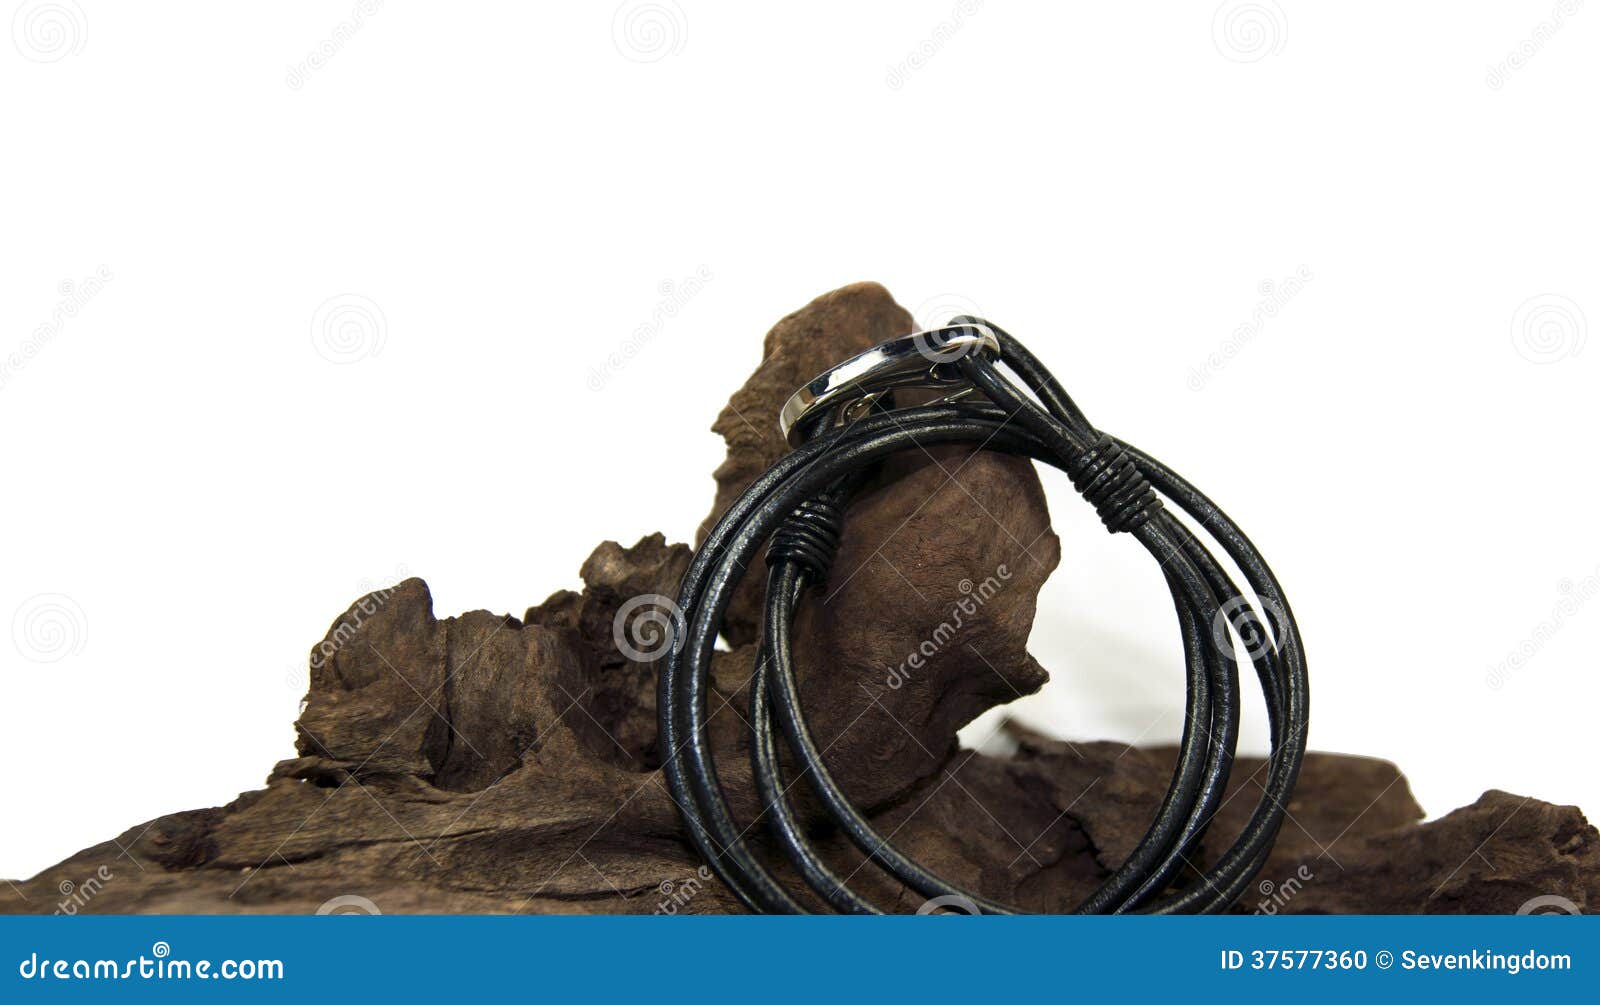 black bracelet